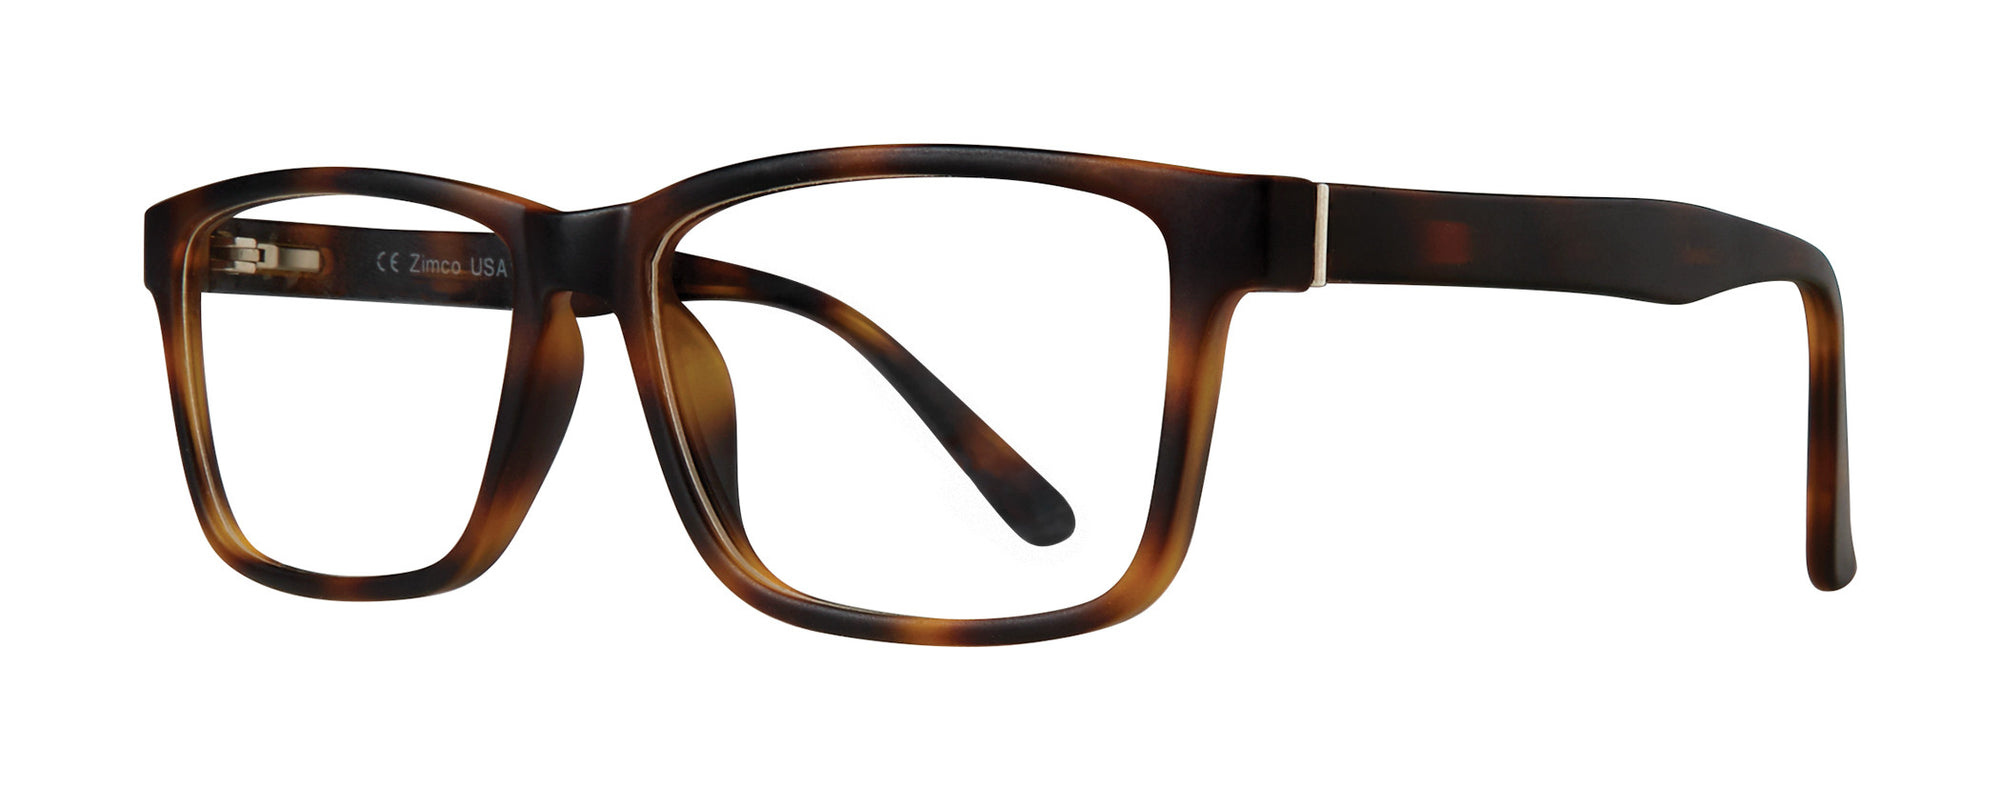 Zimco Attitudes Eyeglasses #43 - Go-Readers.com